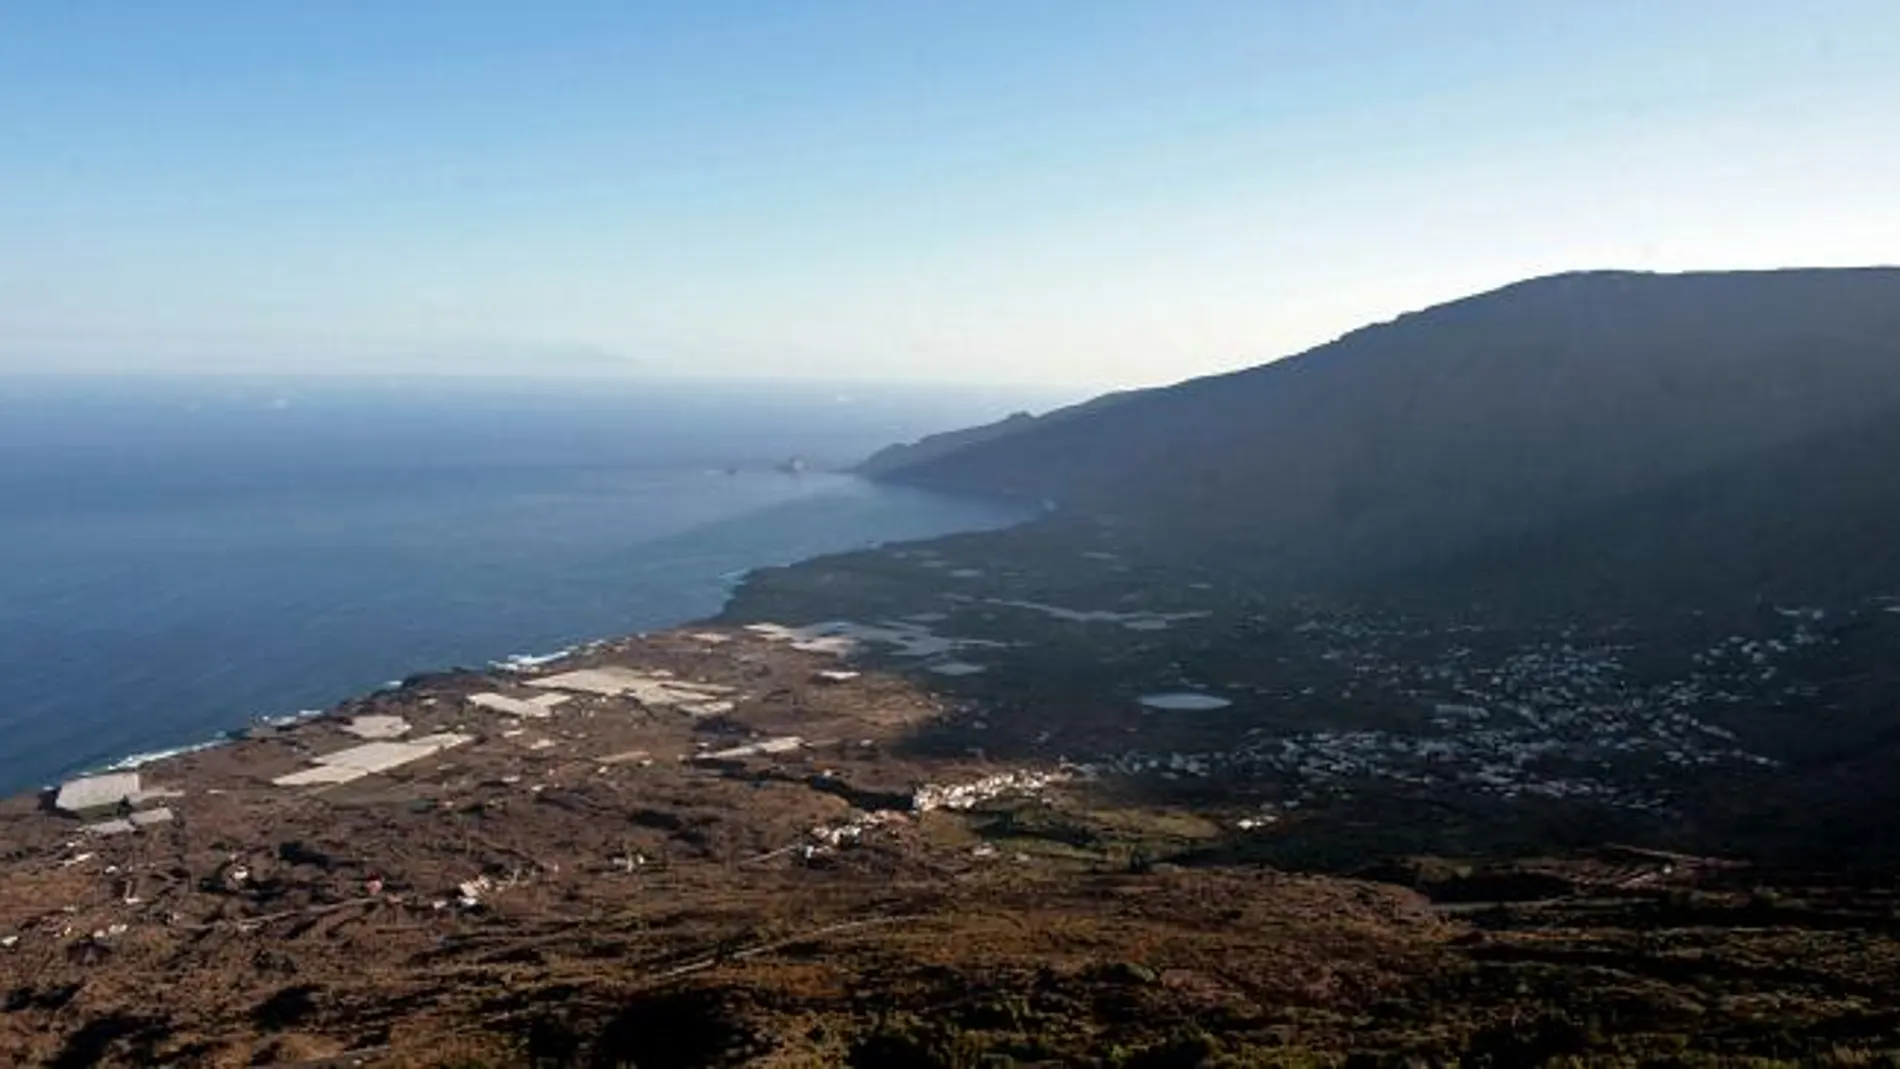 Vista general del Valle de Frontera en la vertiente sur de la isla de El Hierro